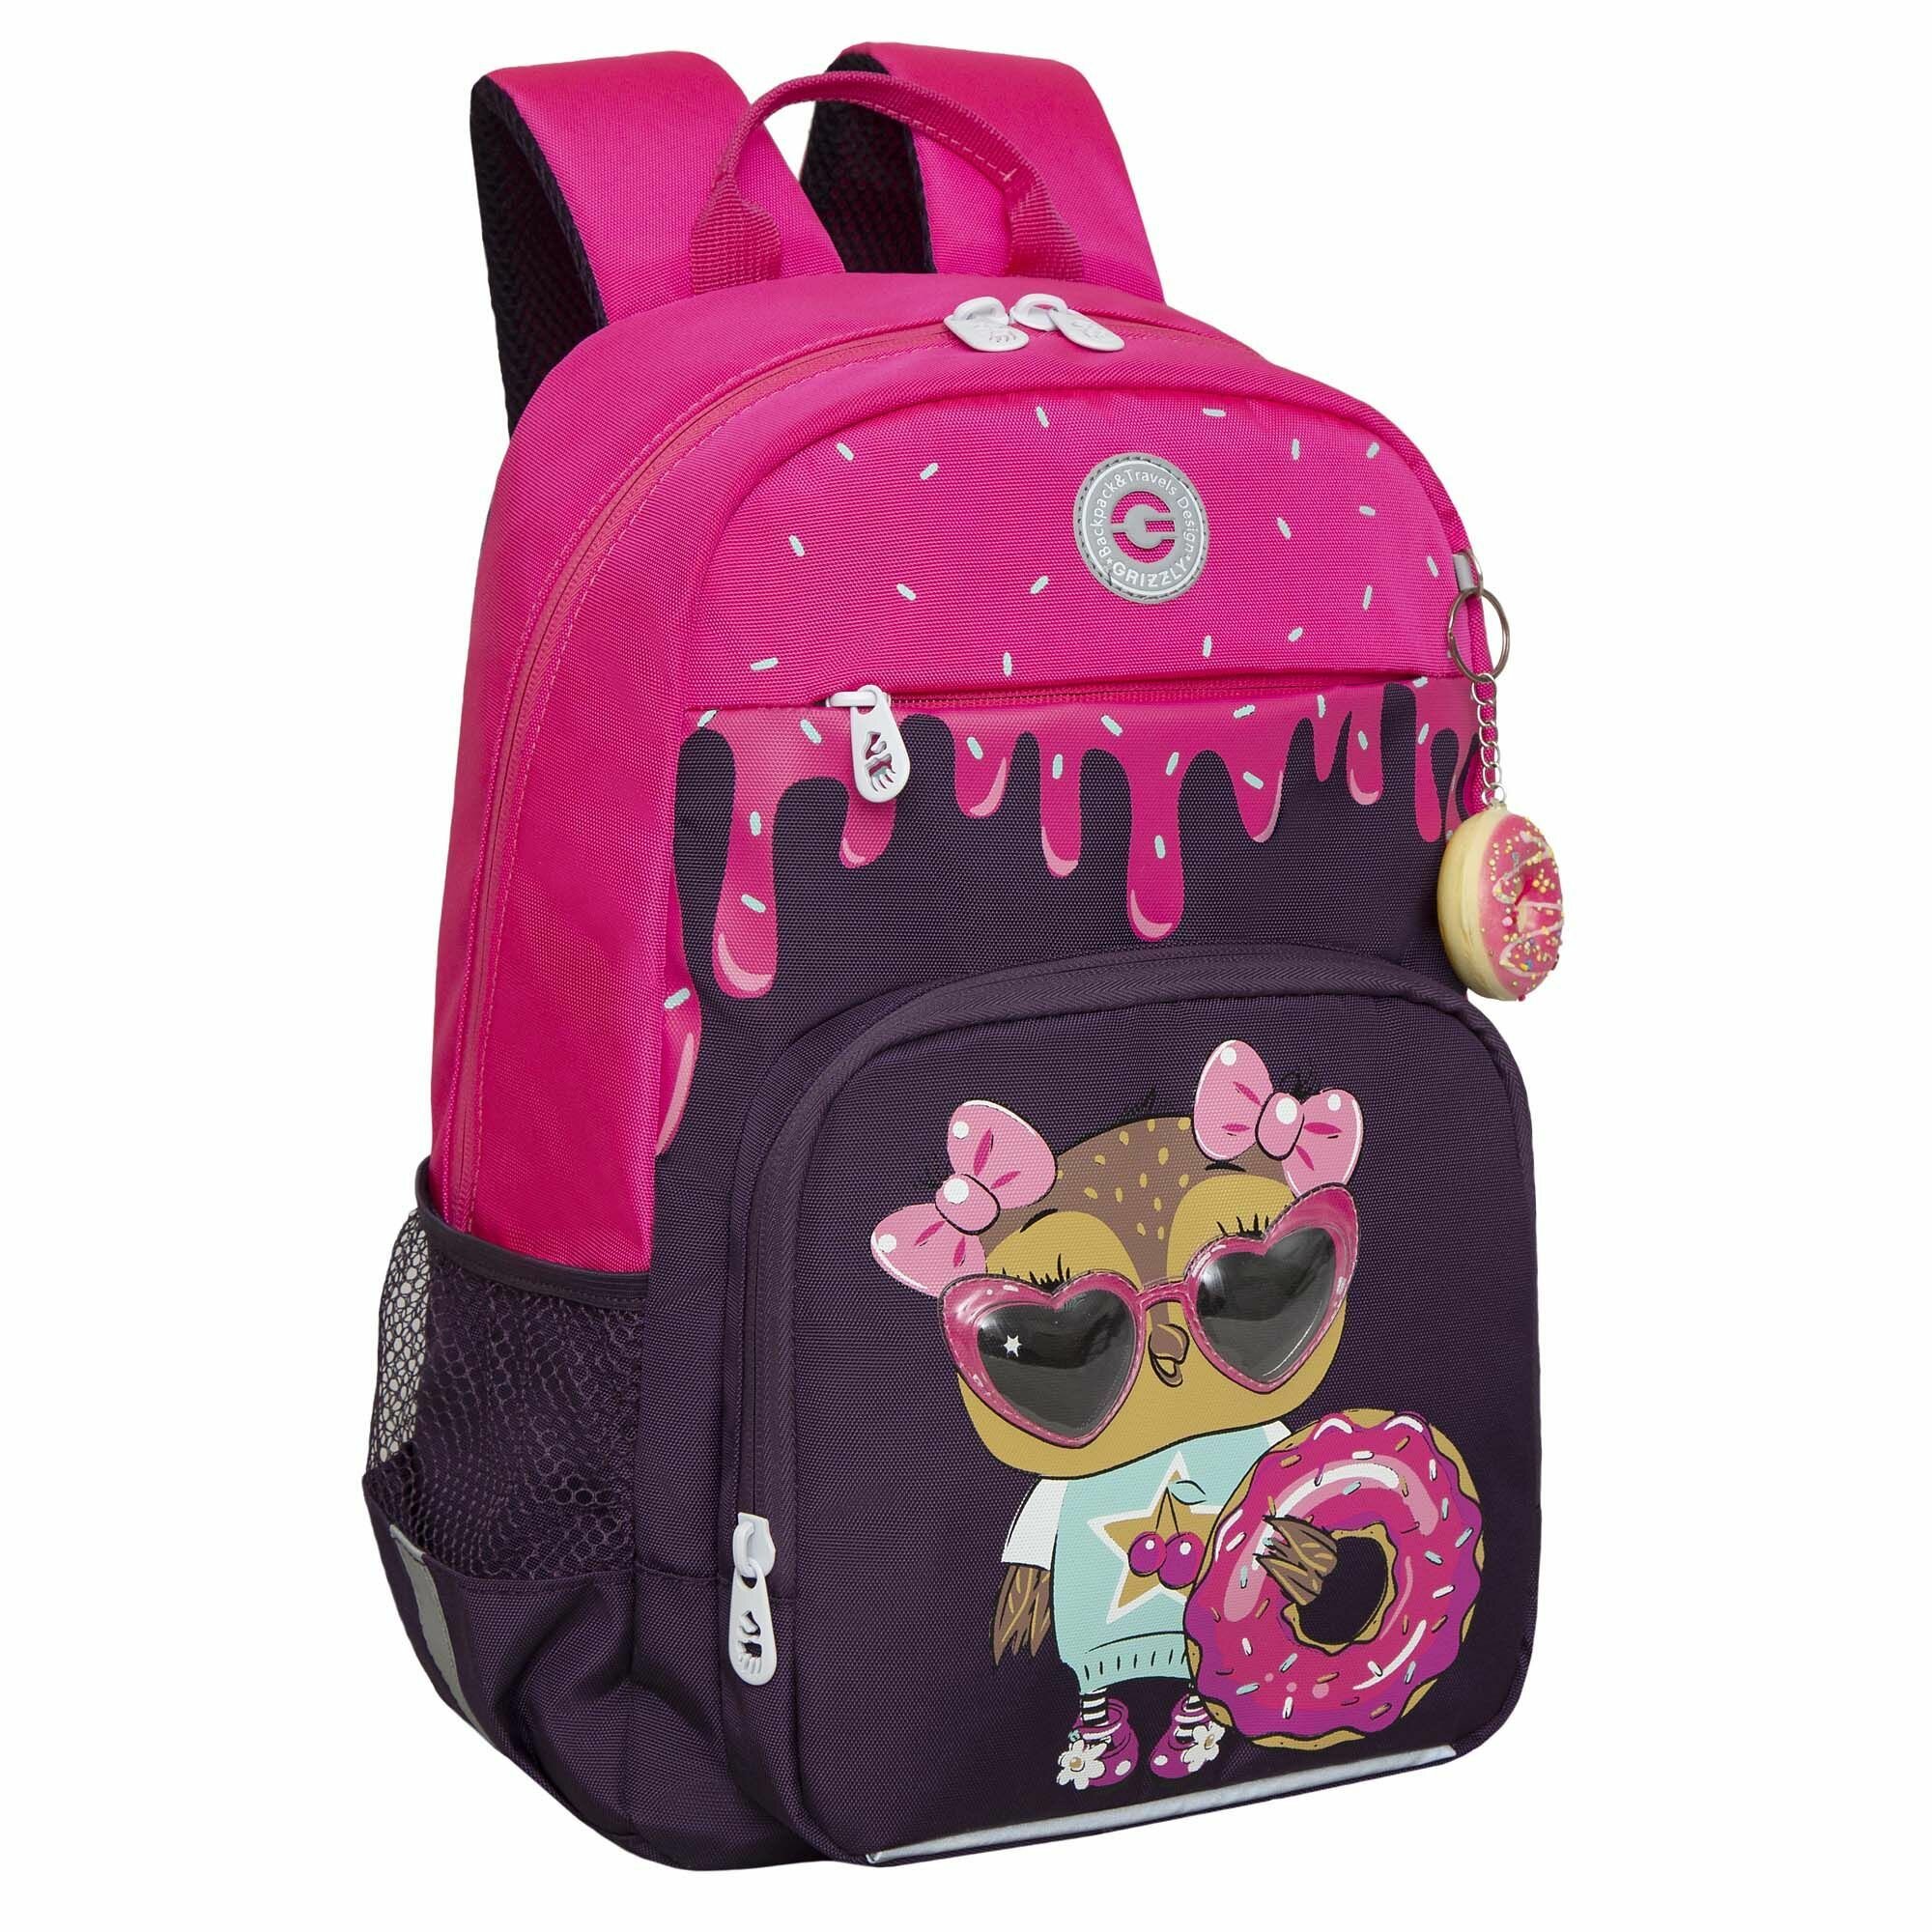 Рюкзак школьный для девочки подростка, с ортопедической спинкой, для средней школы, GRIZZLY, (фиолетовый)